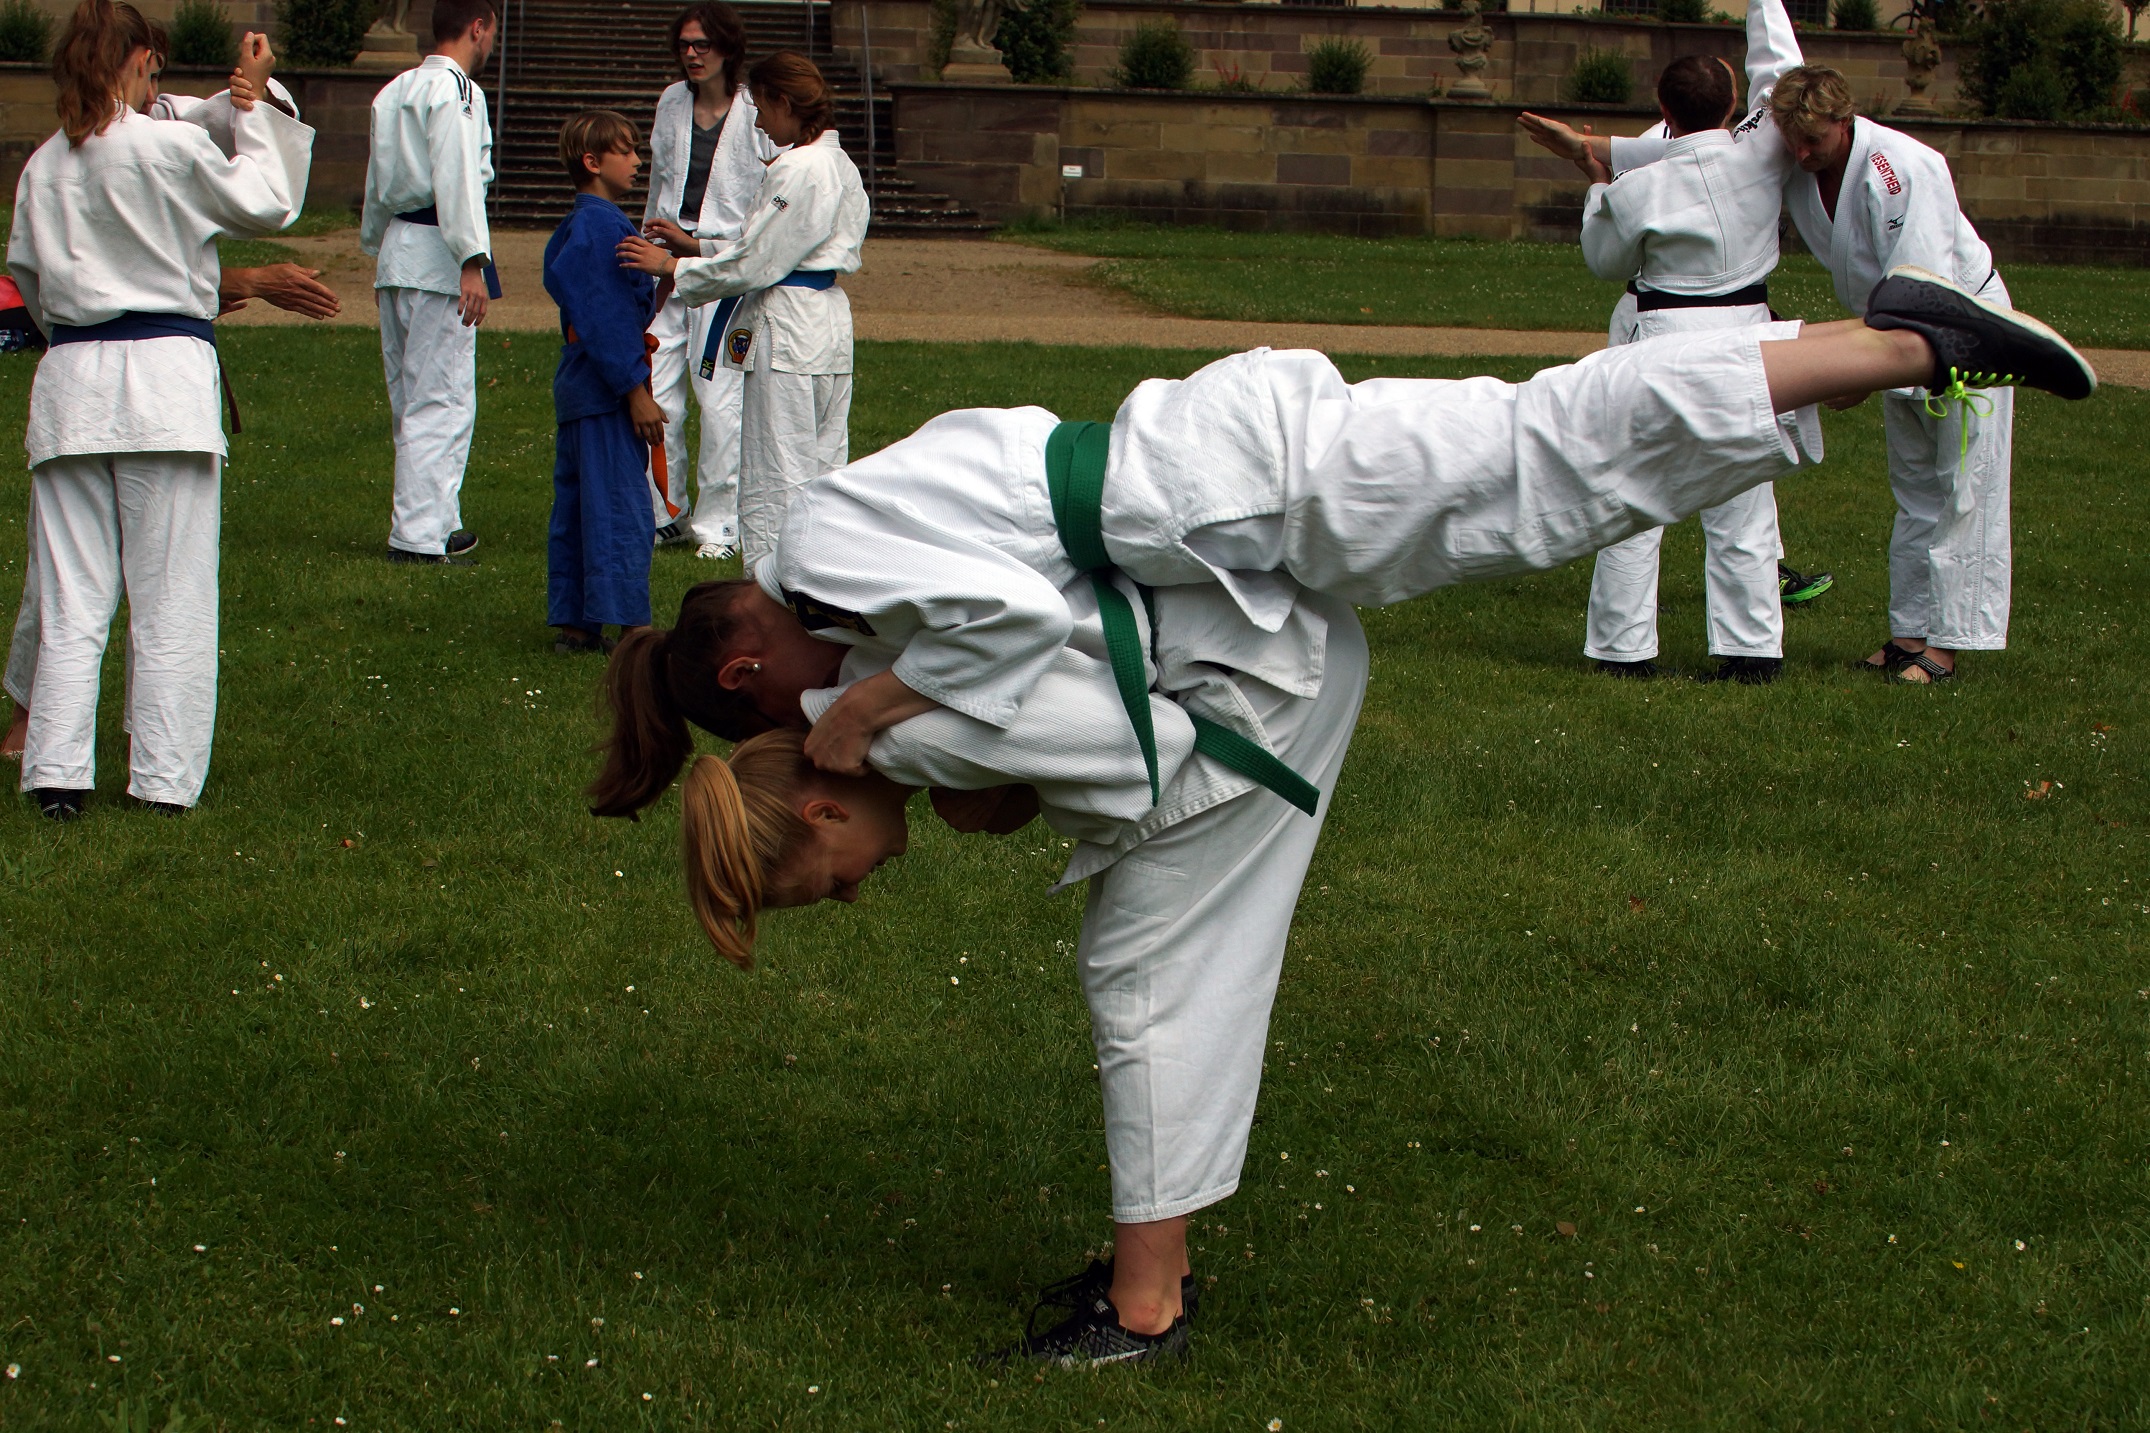 Bild: Einige Judokas stehen im Schlosspark und machen verschiedene Übungen.